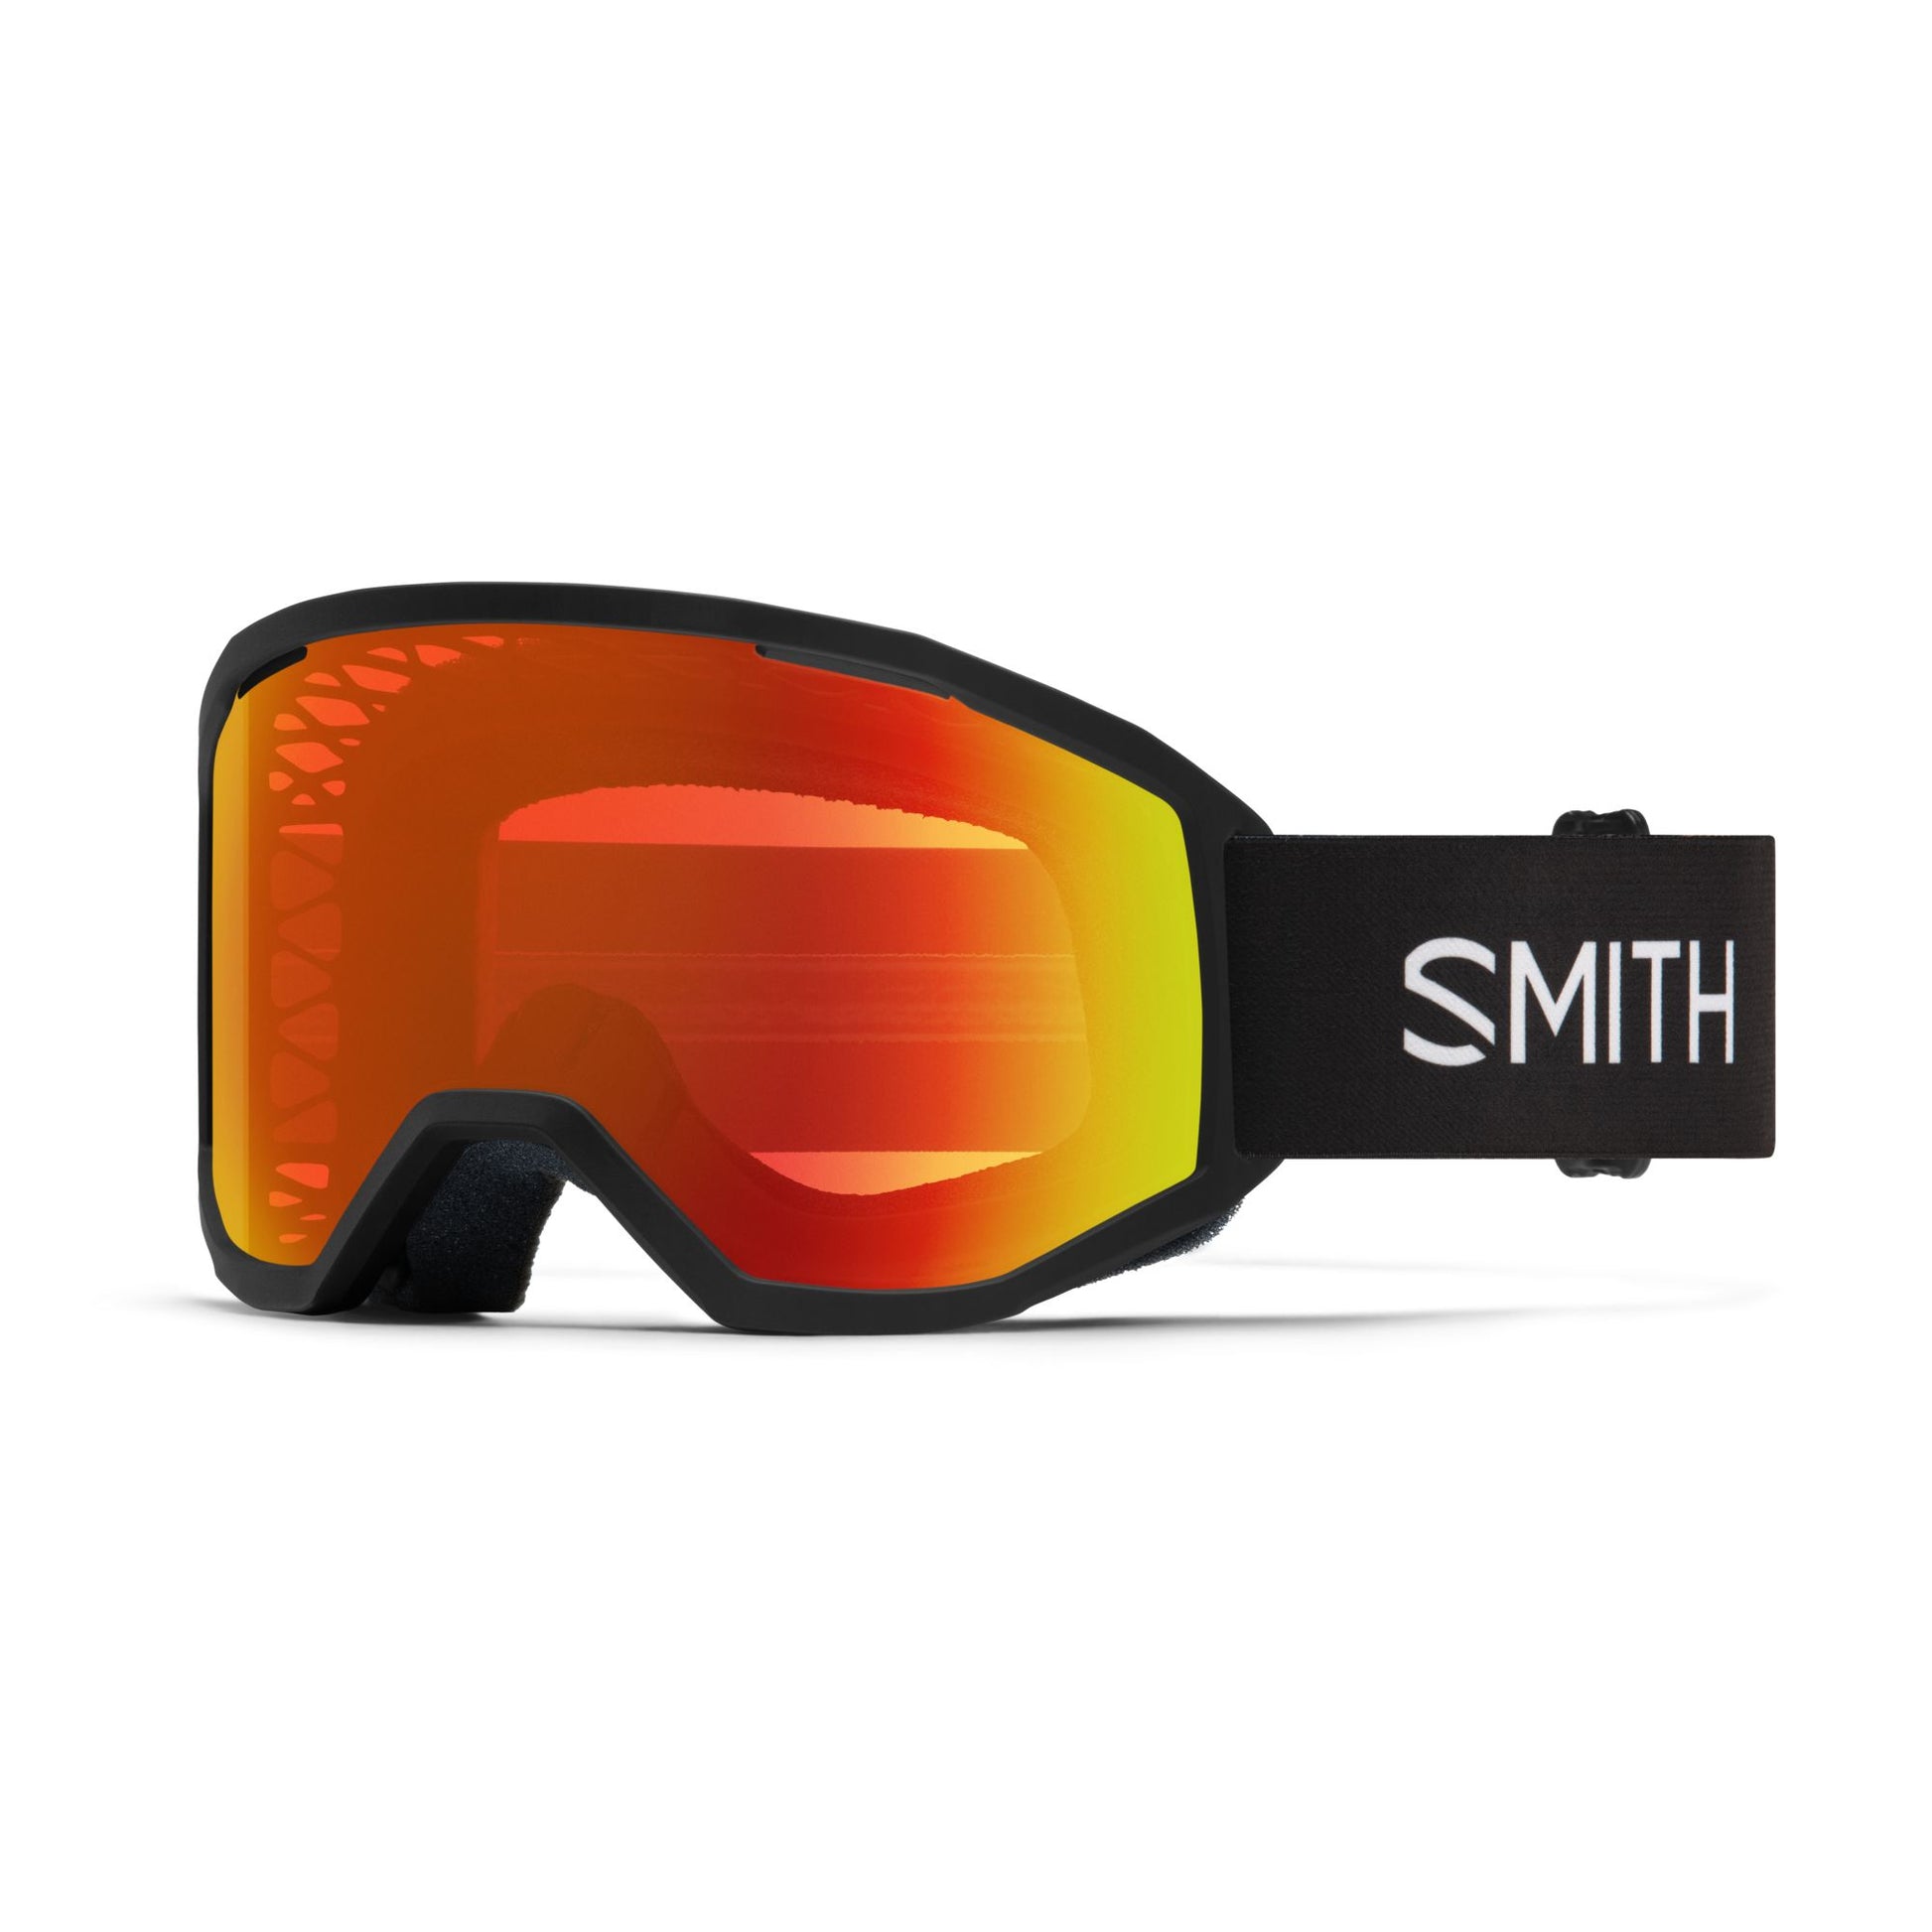 Smith Loam MTB Goggles Black Red Mirror Bike Goggles